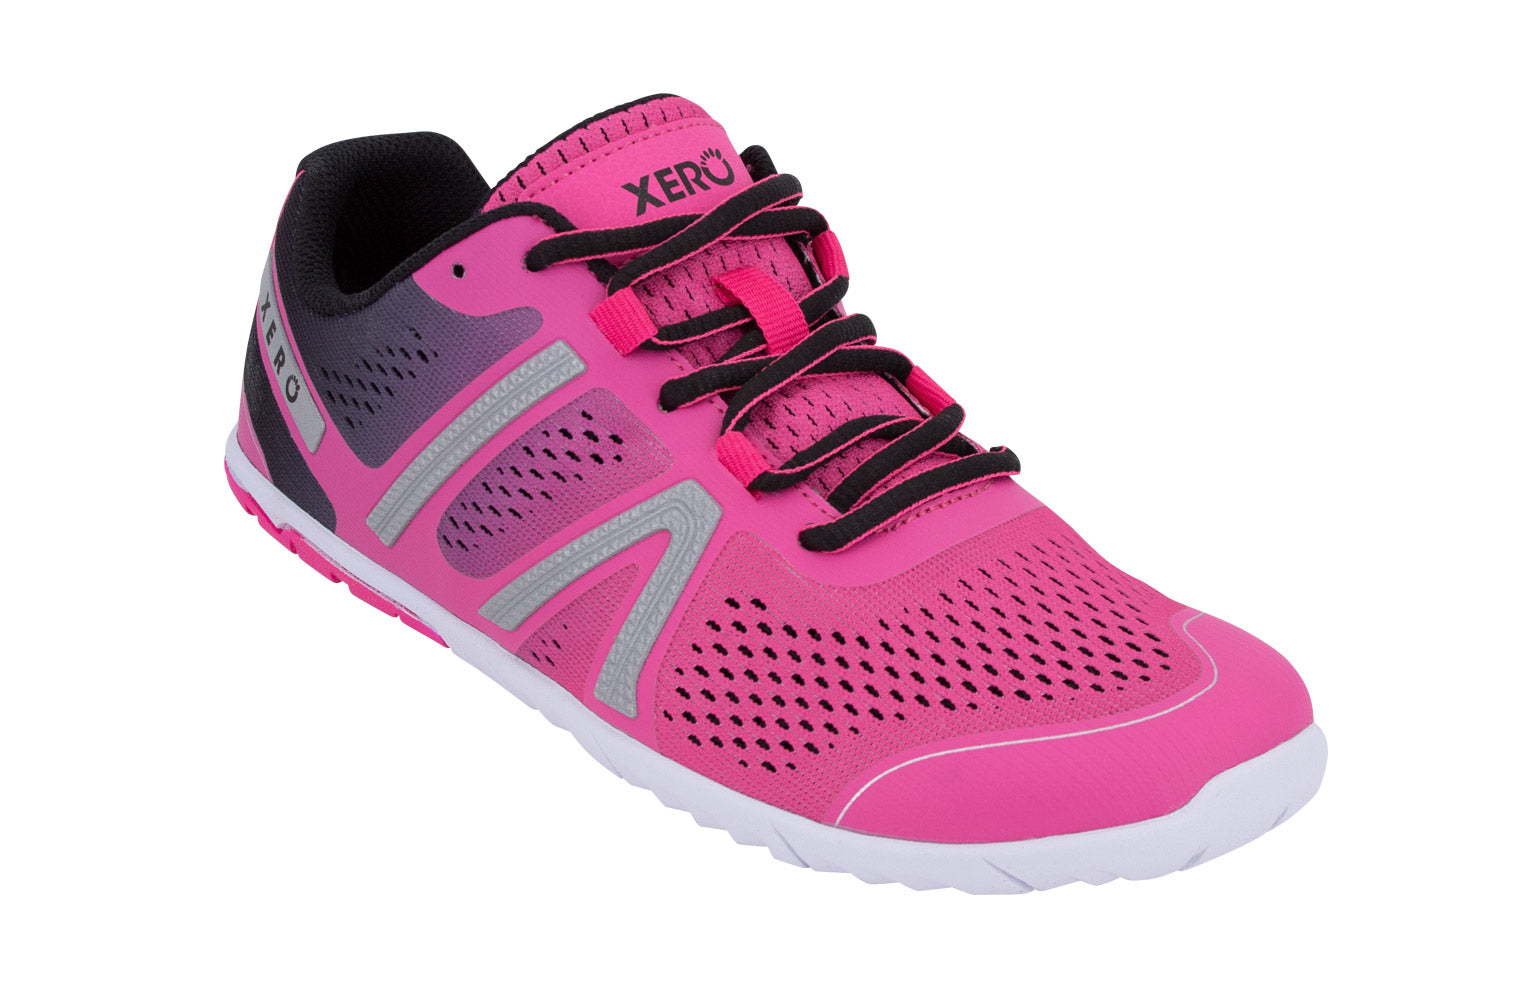 Xero Shoes HFS Womens barfods træningssko/løbesko til kvinder i farven pink glow, vinklet